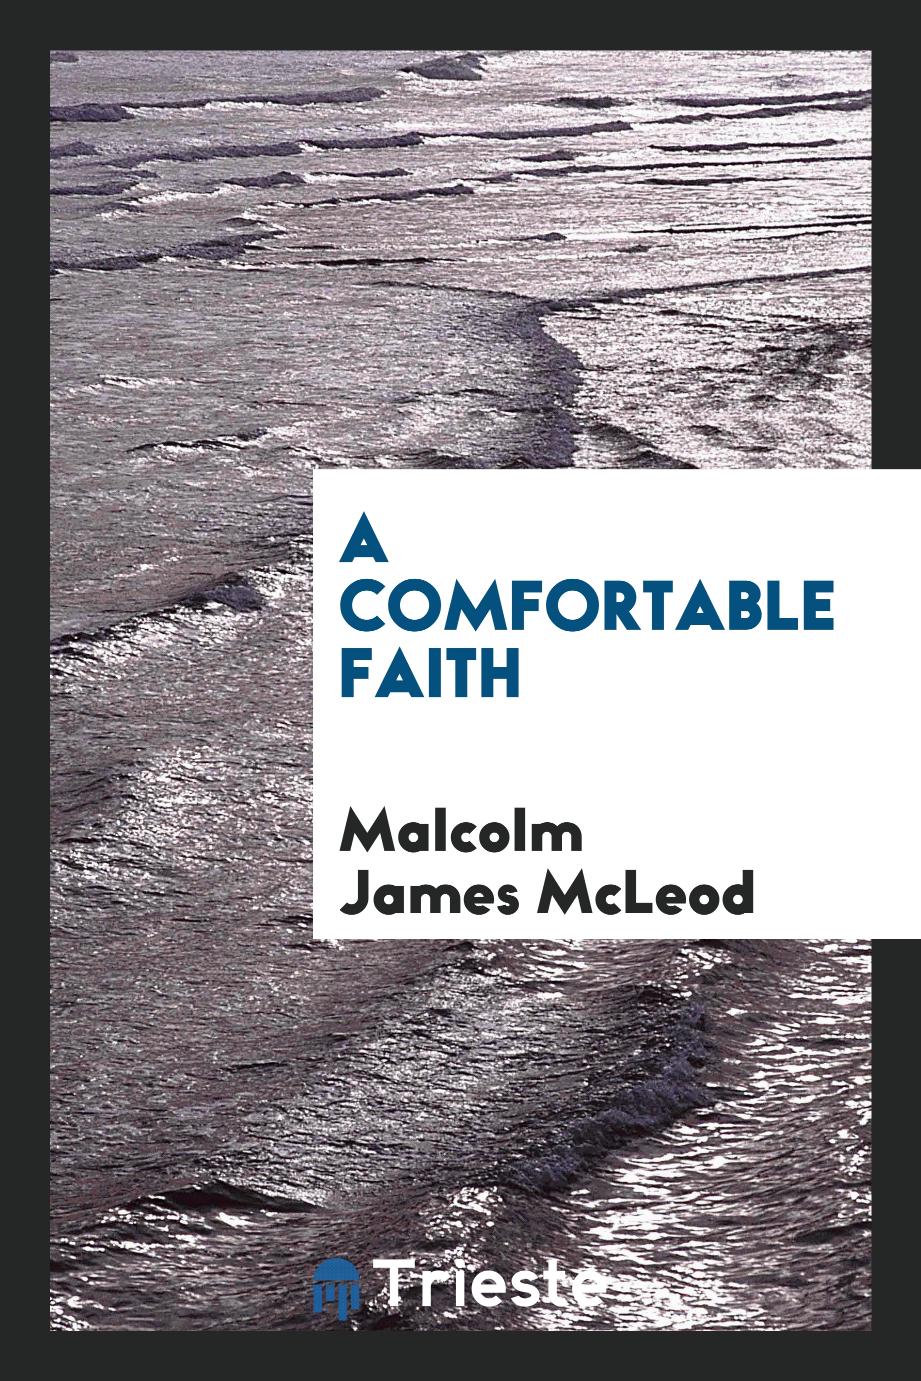 A comfortable faith